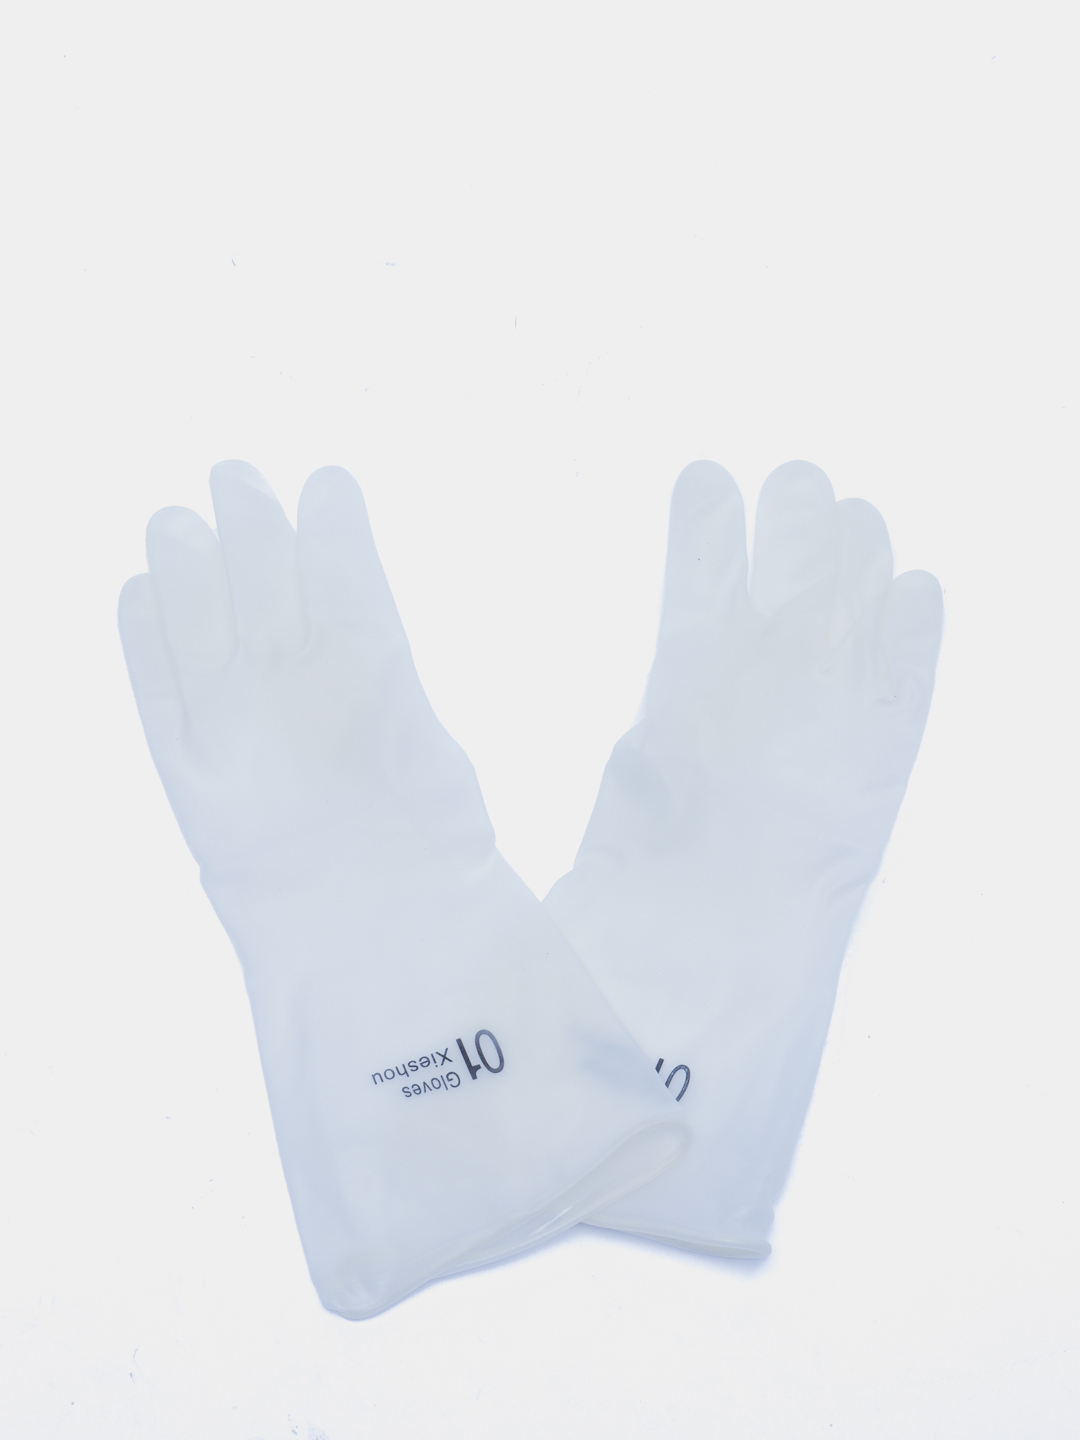 Популярные модели хозяйственных резиновых перчаток